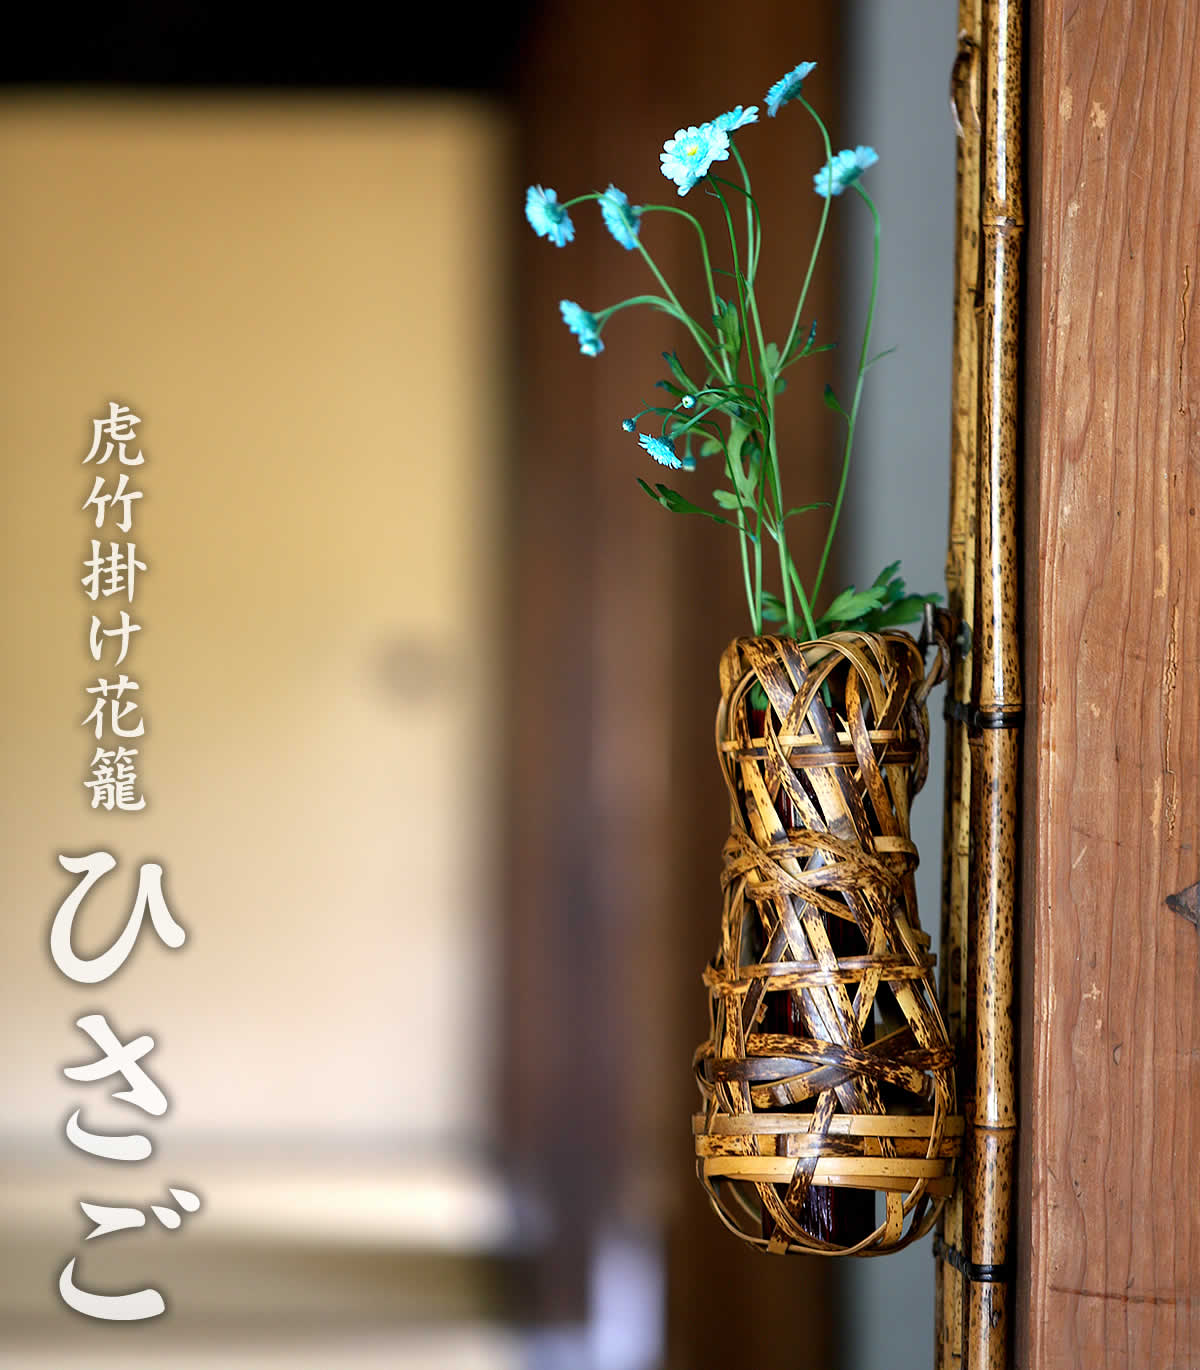 虎竹掛け花籠 ひさごは、日本唯一の虎斑竹を繊細に編み込んだ、壁に掛けられる花かごです。